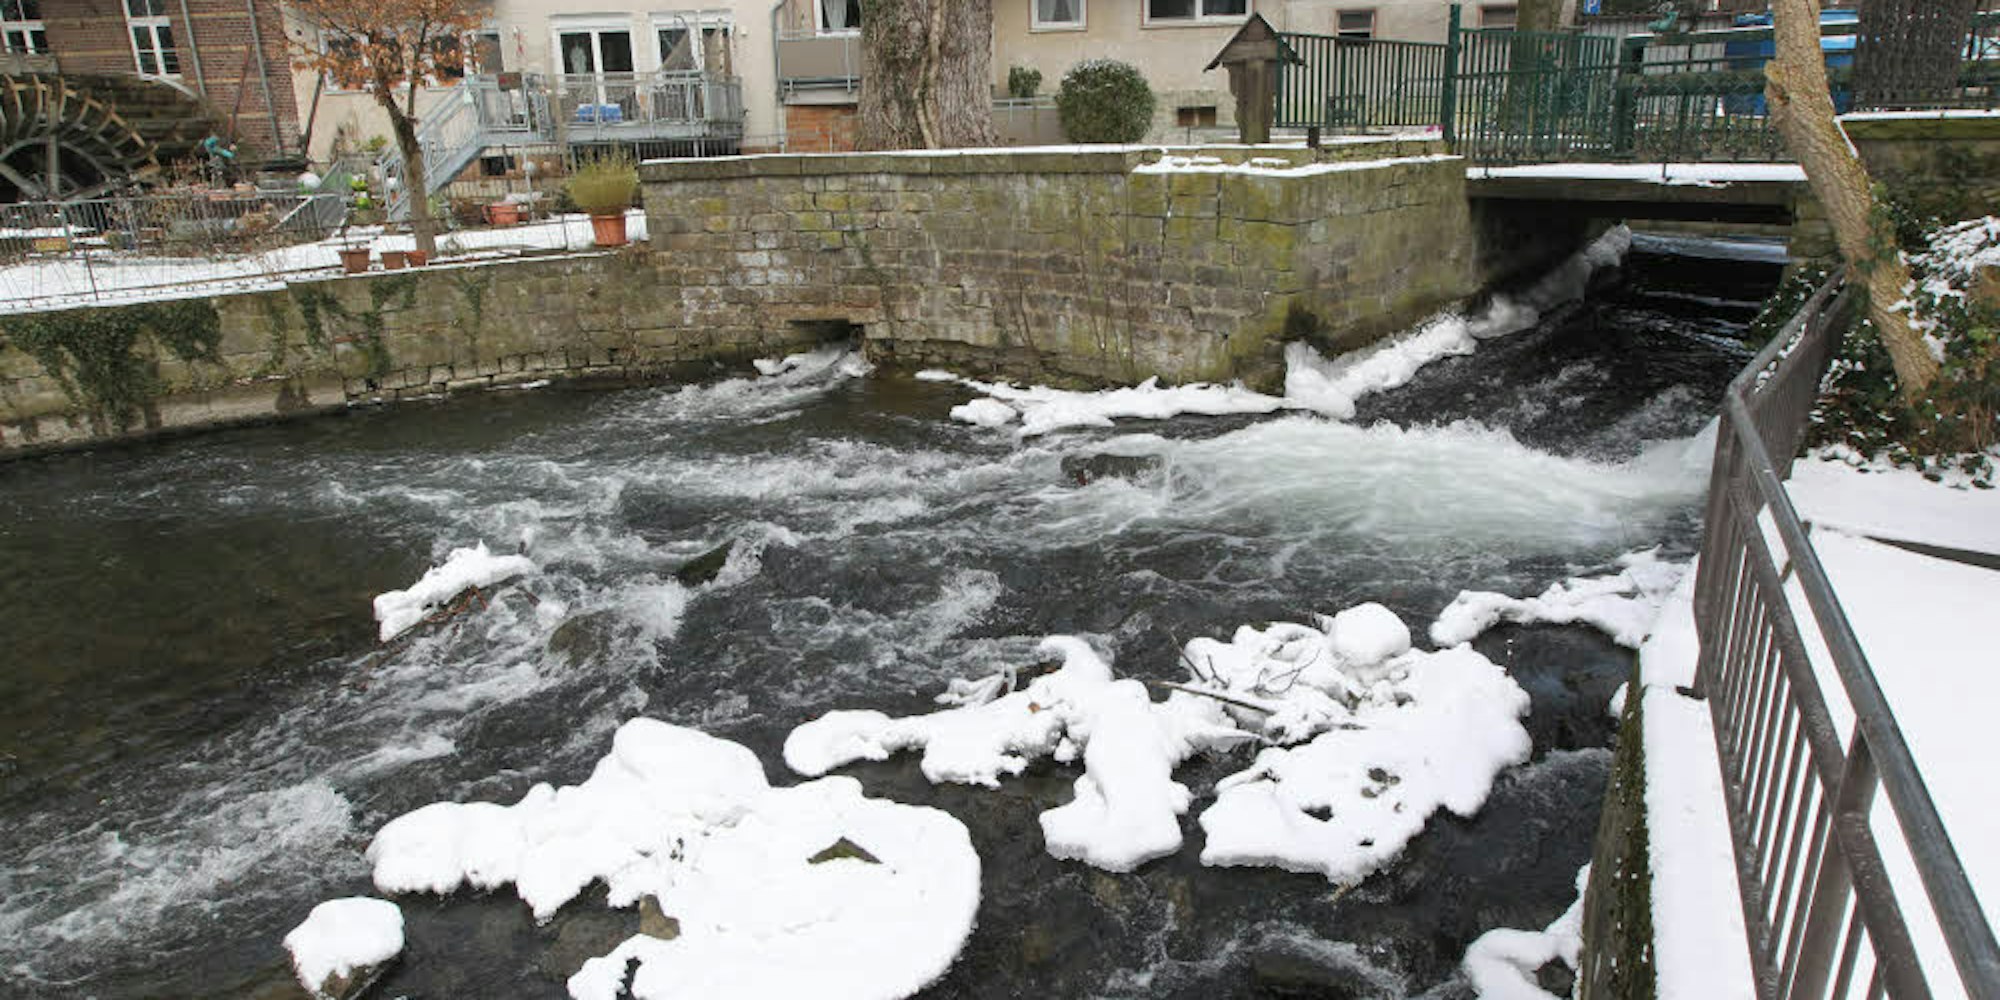 Eisig kommt das Wasser nahe der Stadtmühle daher, die Fische fahren ihren Stoffwechsel herunter und bewegen sich kaum.